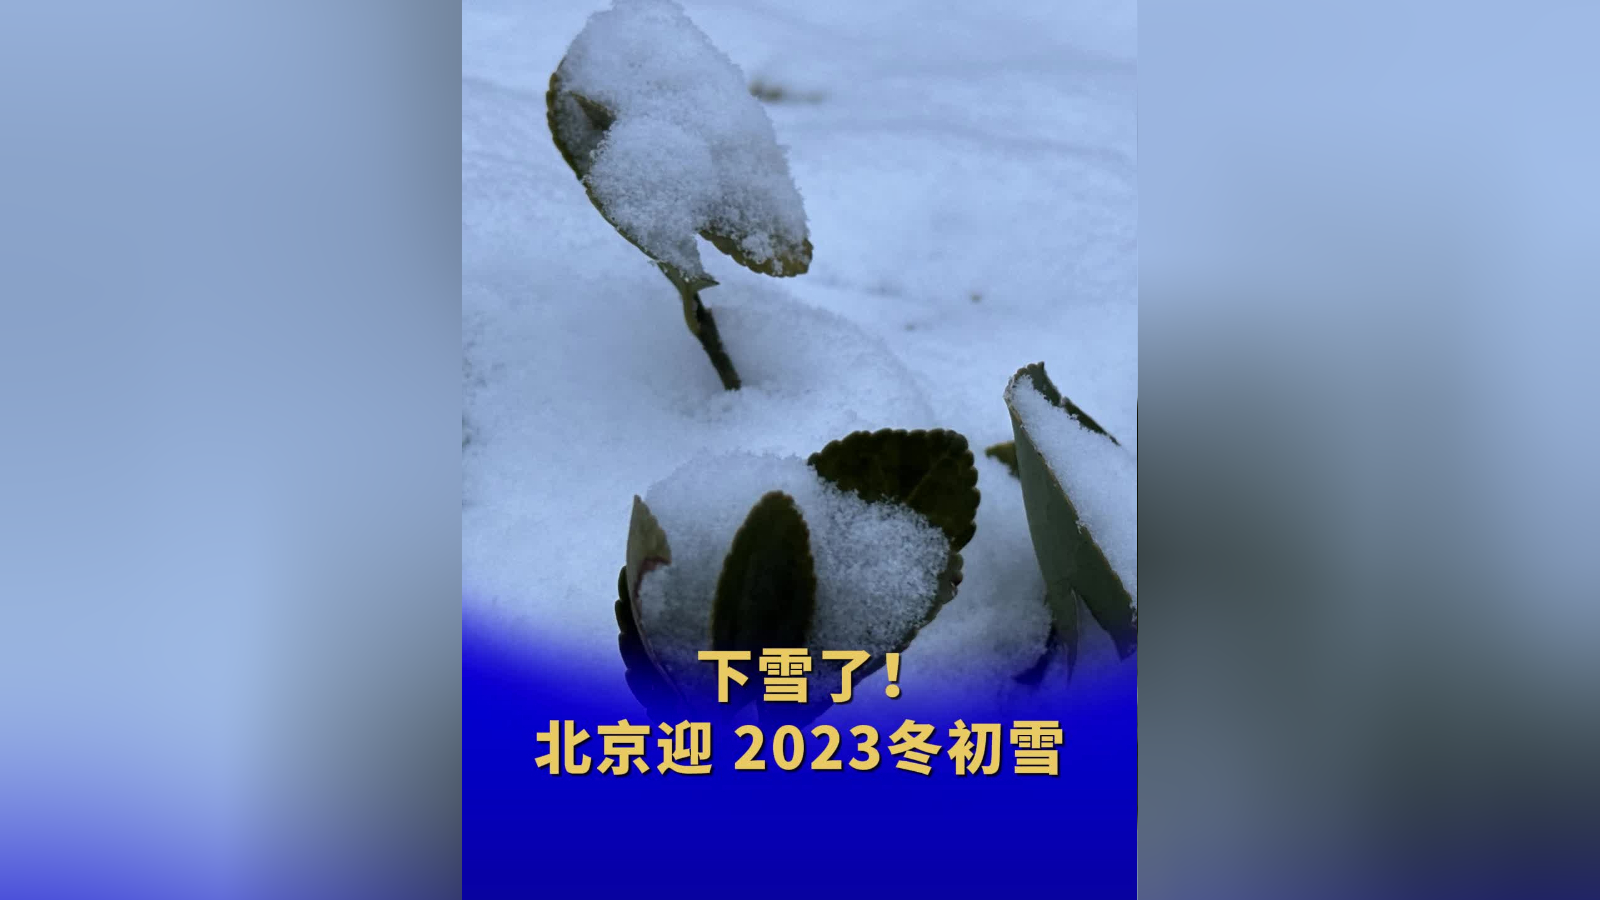 北京迎2023冬初雪